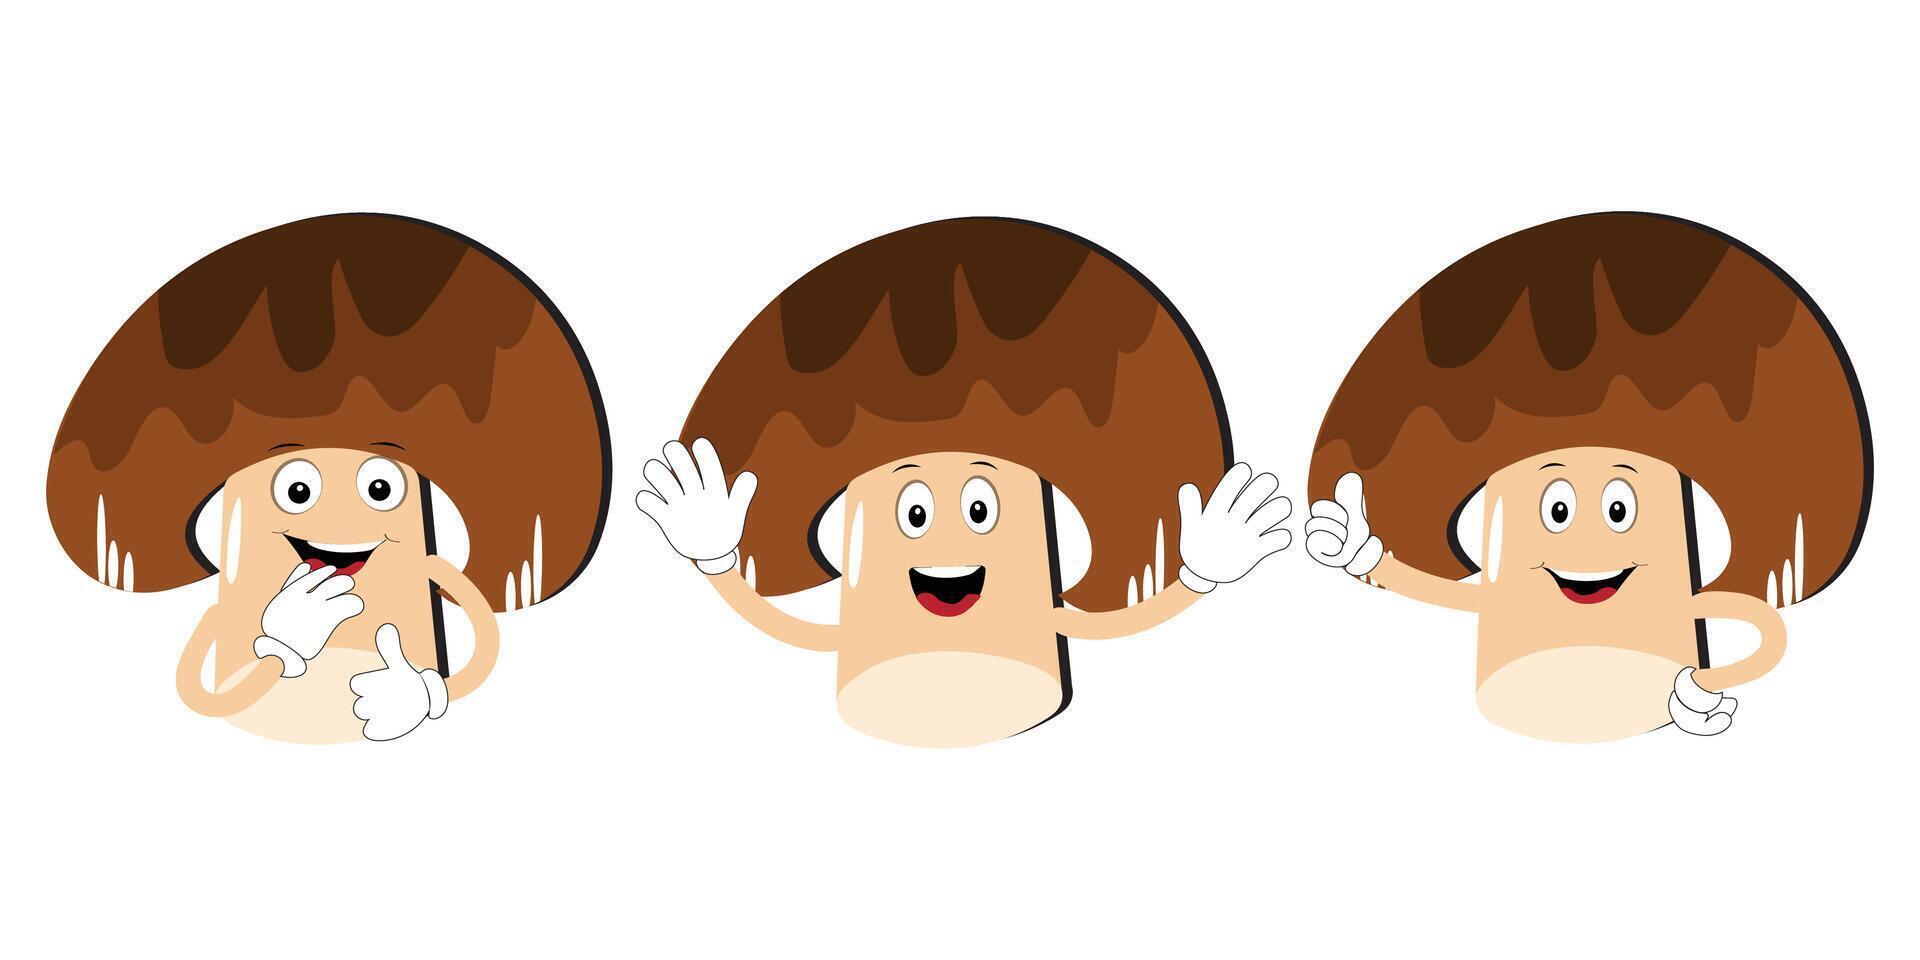 svamp tecknad serie karaktär i olika gester, uppsättning illustration svamp maskot med olika annorlunda uttryck av söt känsla i komisk stil för grafisk designer, vektor illustration